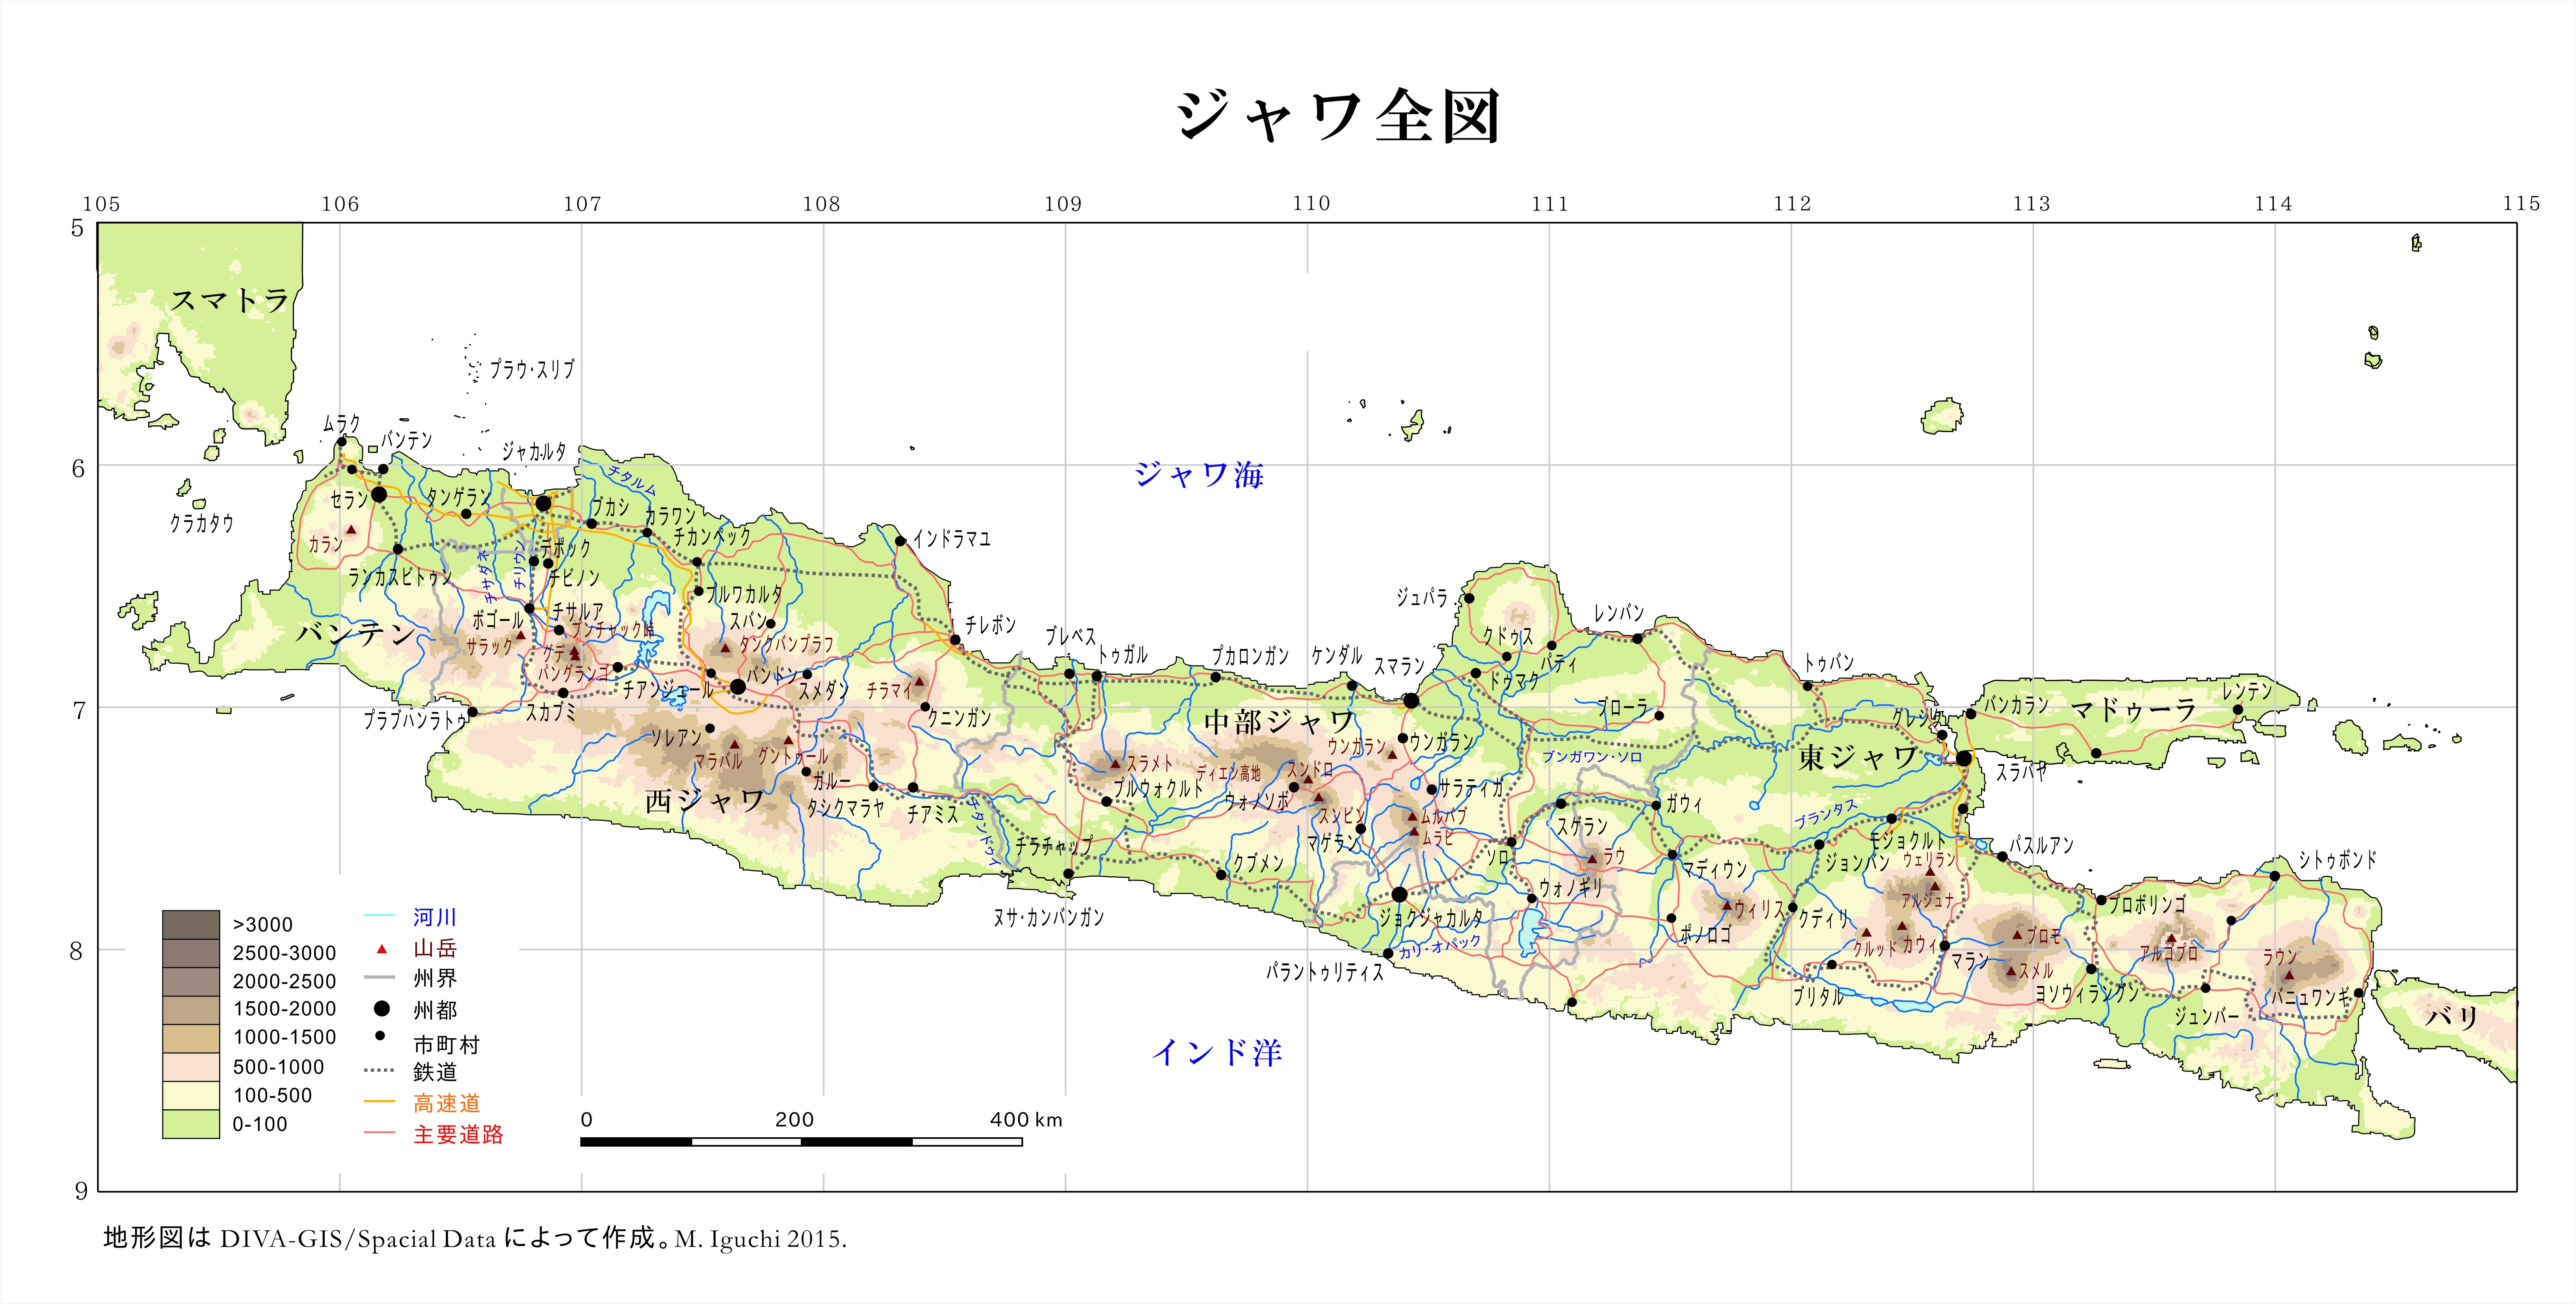 ジャワ全図。DIVA-GIS/Country Data/Indonesia によって作成。M. Iguchi, February 2016